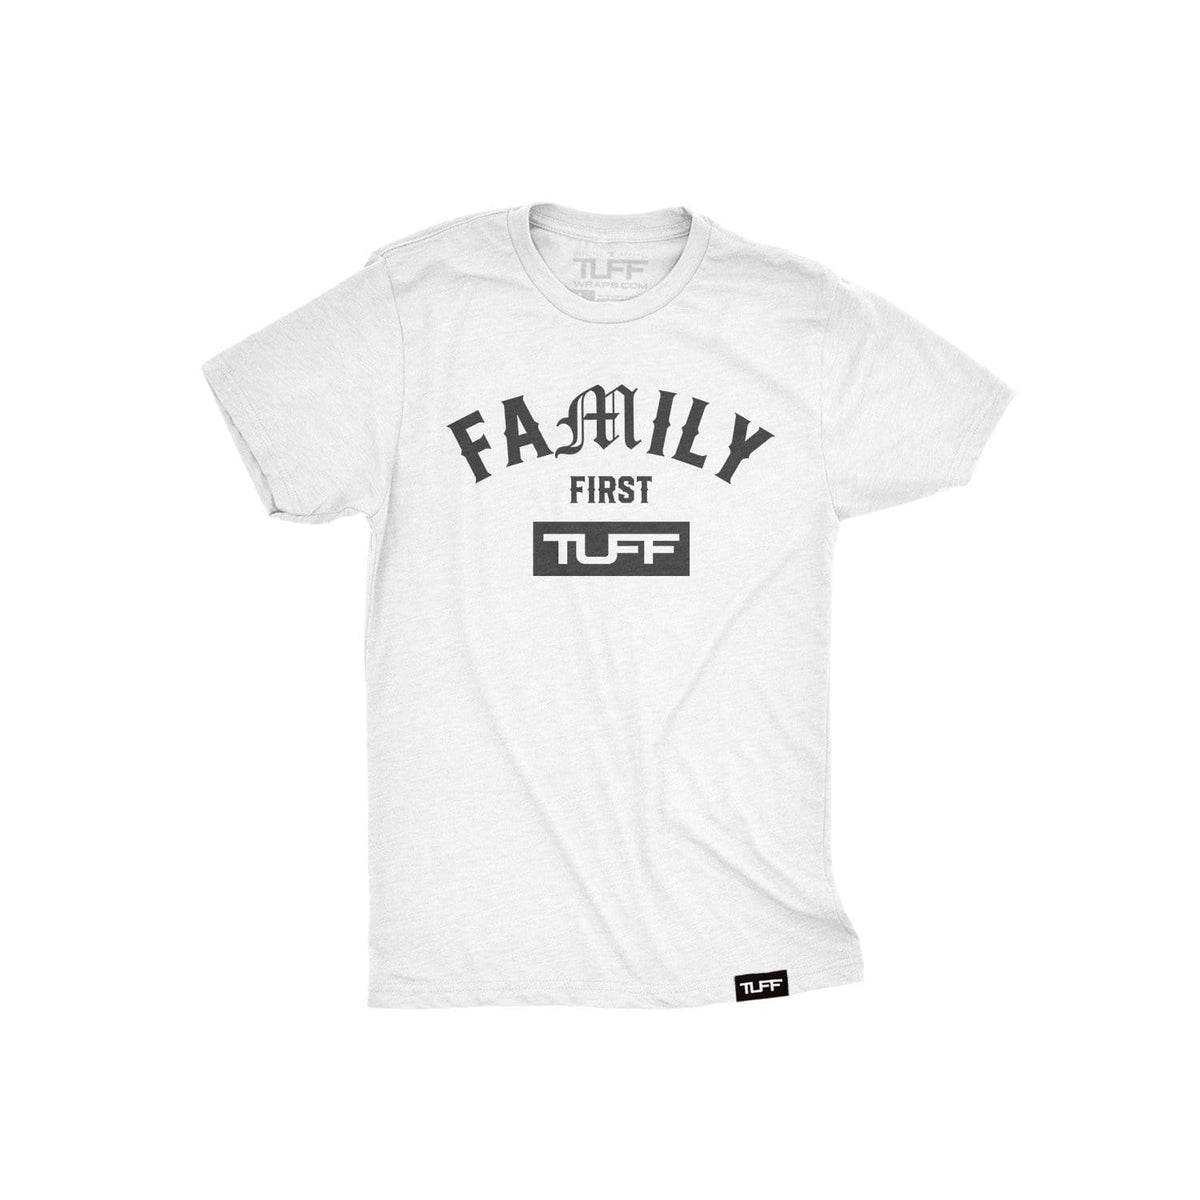 Family First Youth Tee XS / White TuffWraps.com